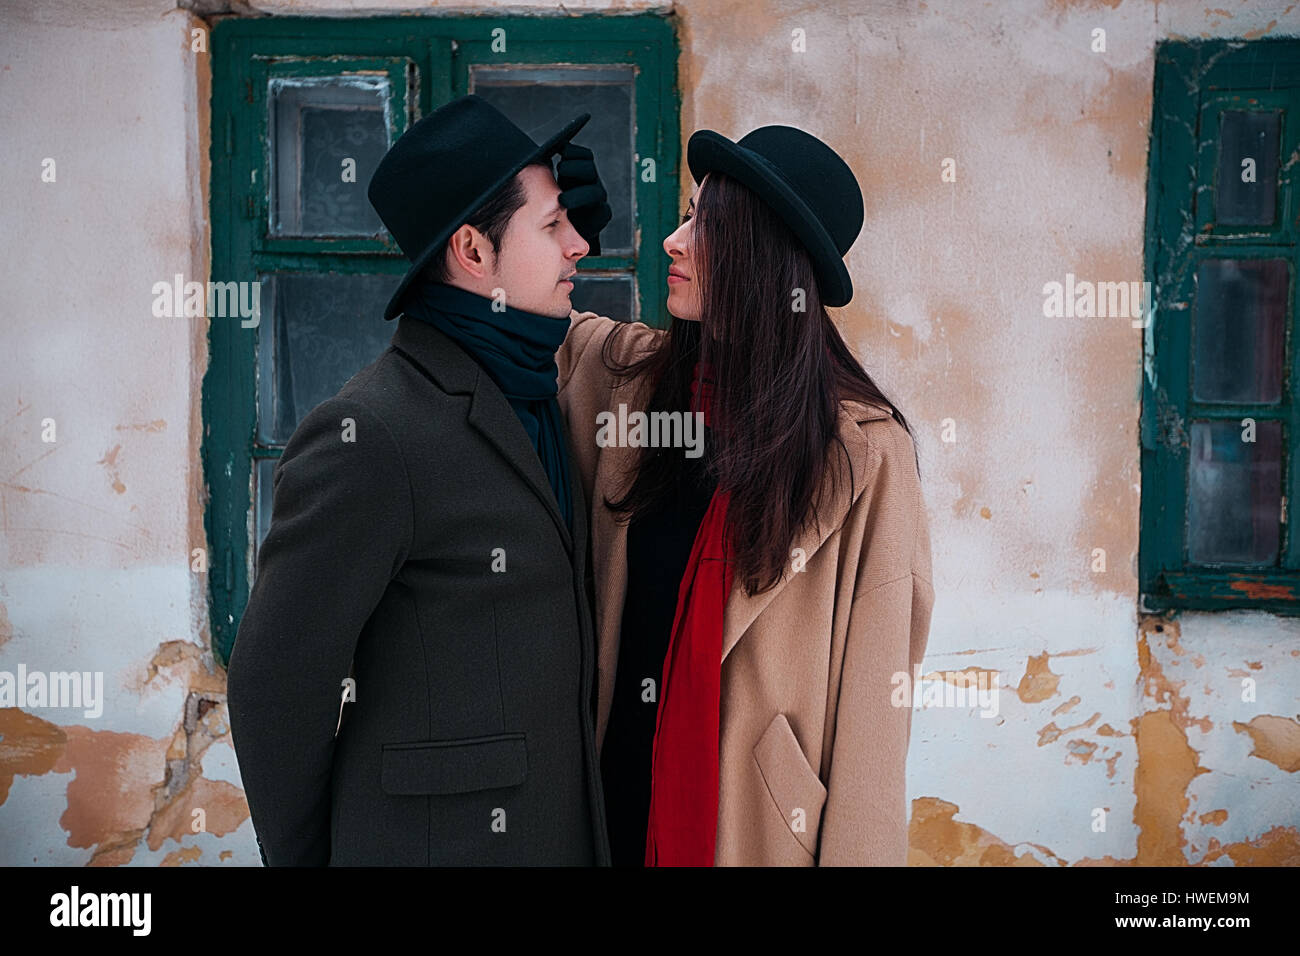 Couple on winter vacation, Odessa, Ukraine Stock Photo